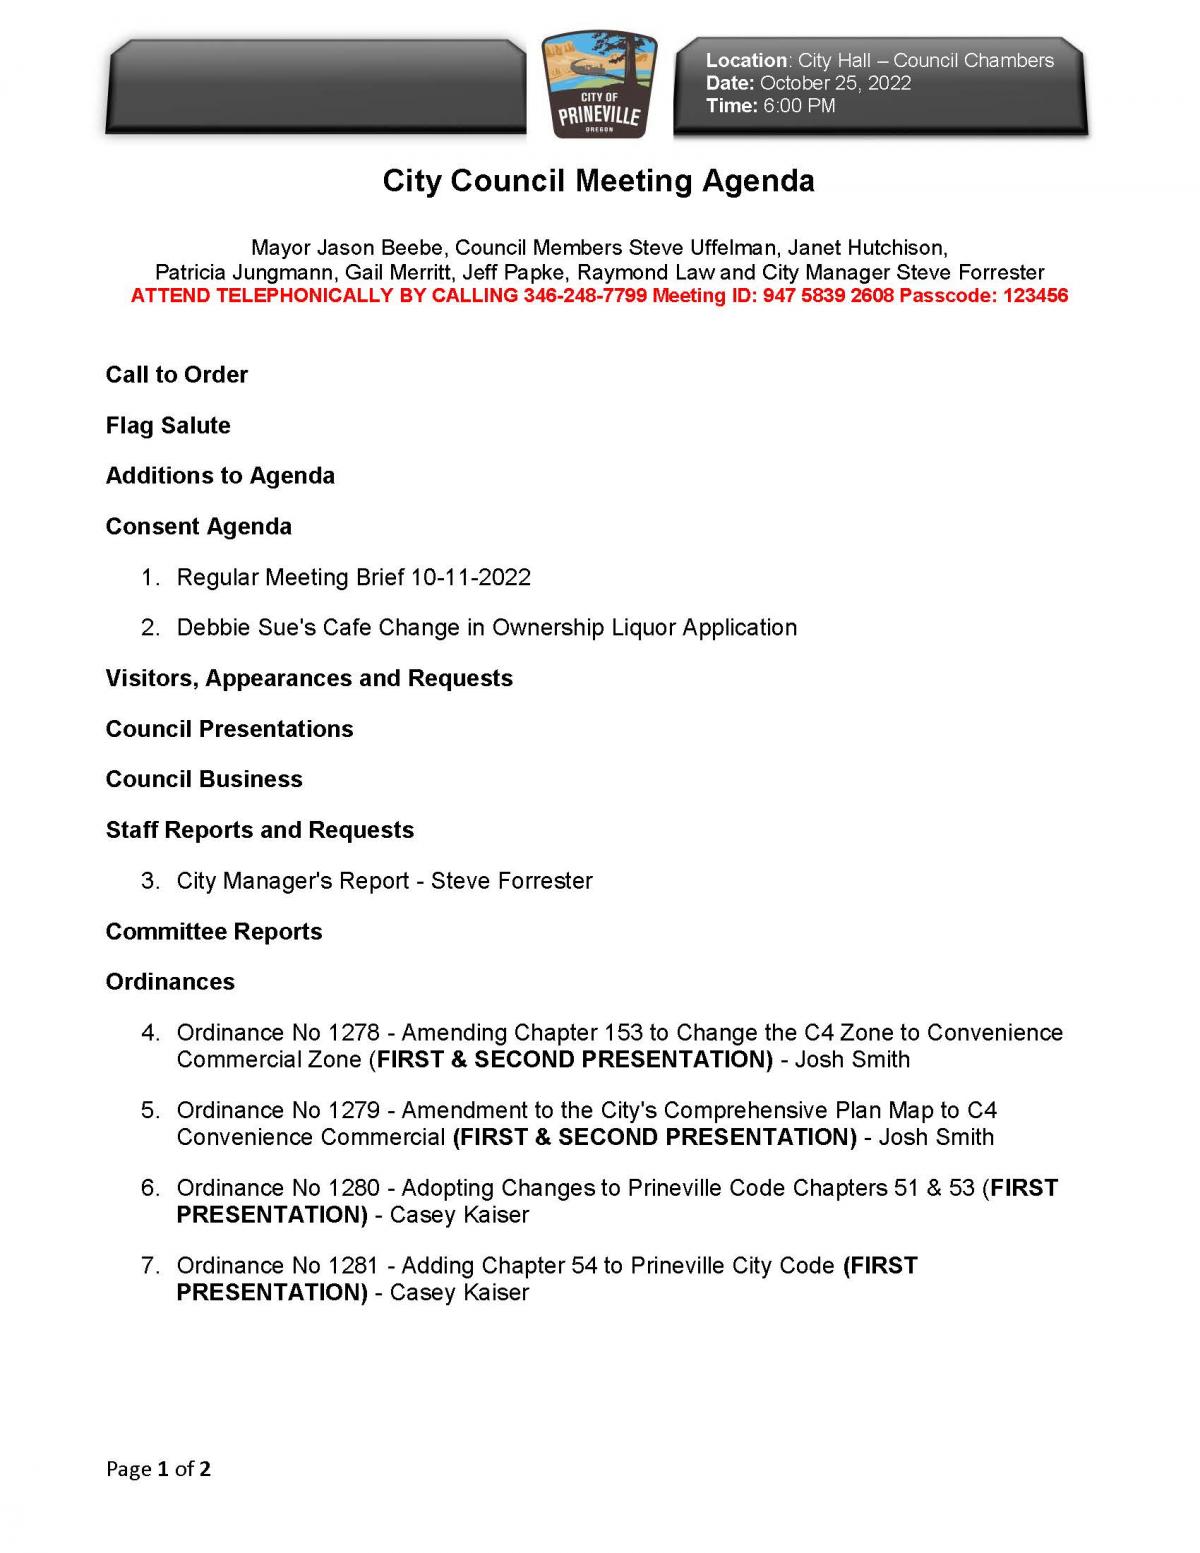 Council Agenda 10-25-2022 Page 1